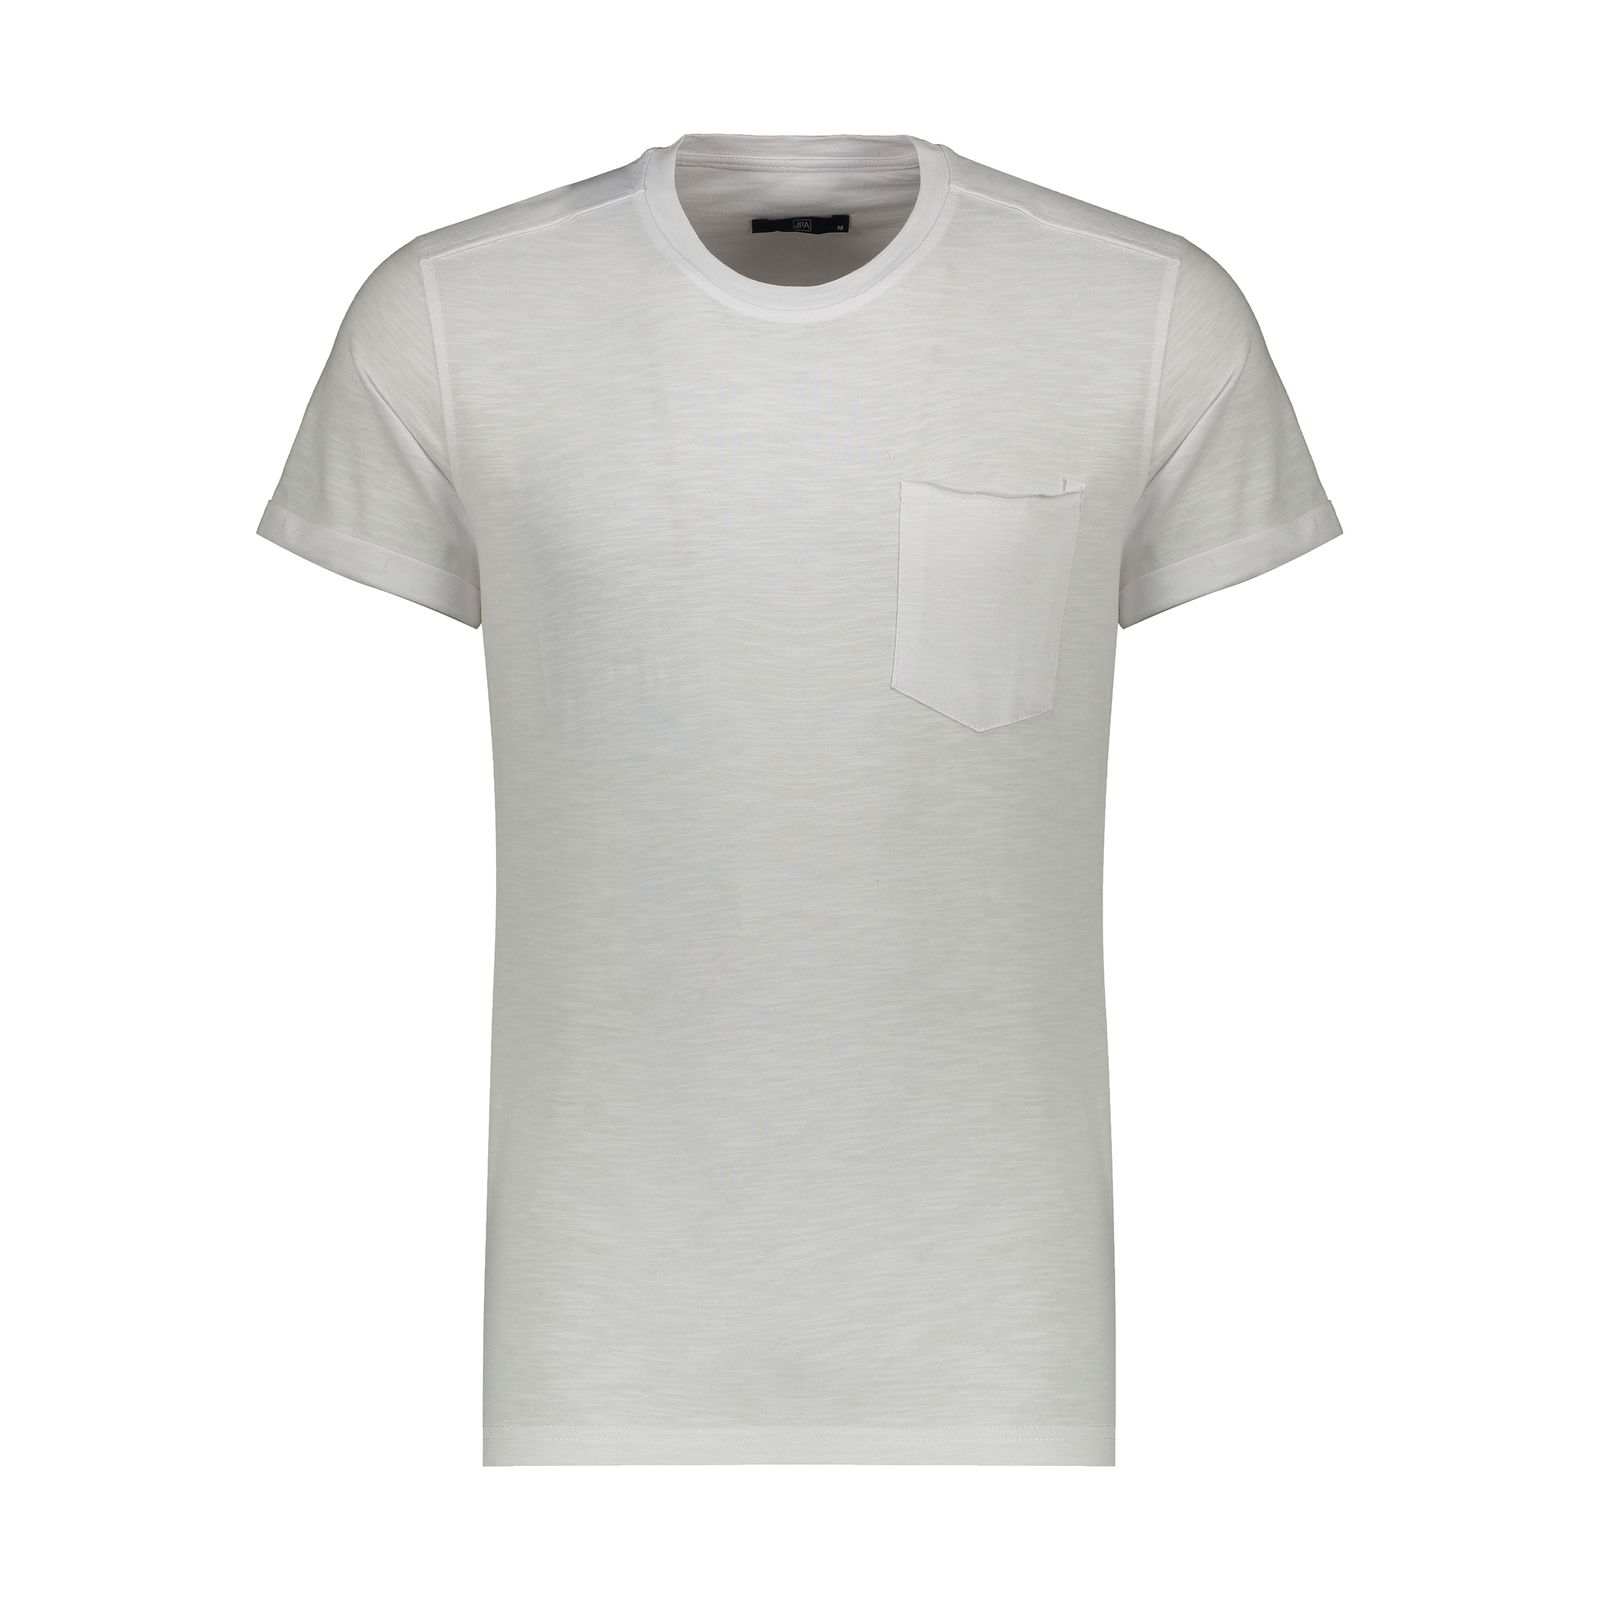 تی شرت مردانه جامه پوش آرا مدل 4011010381-01 -  - 1